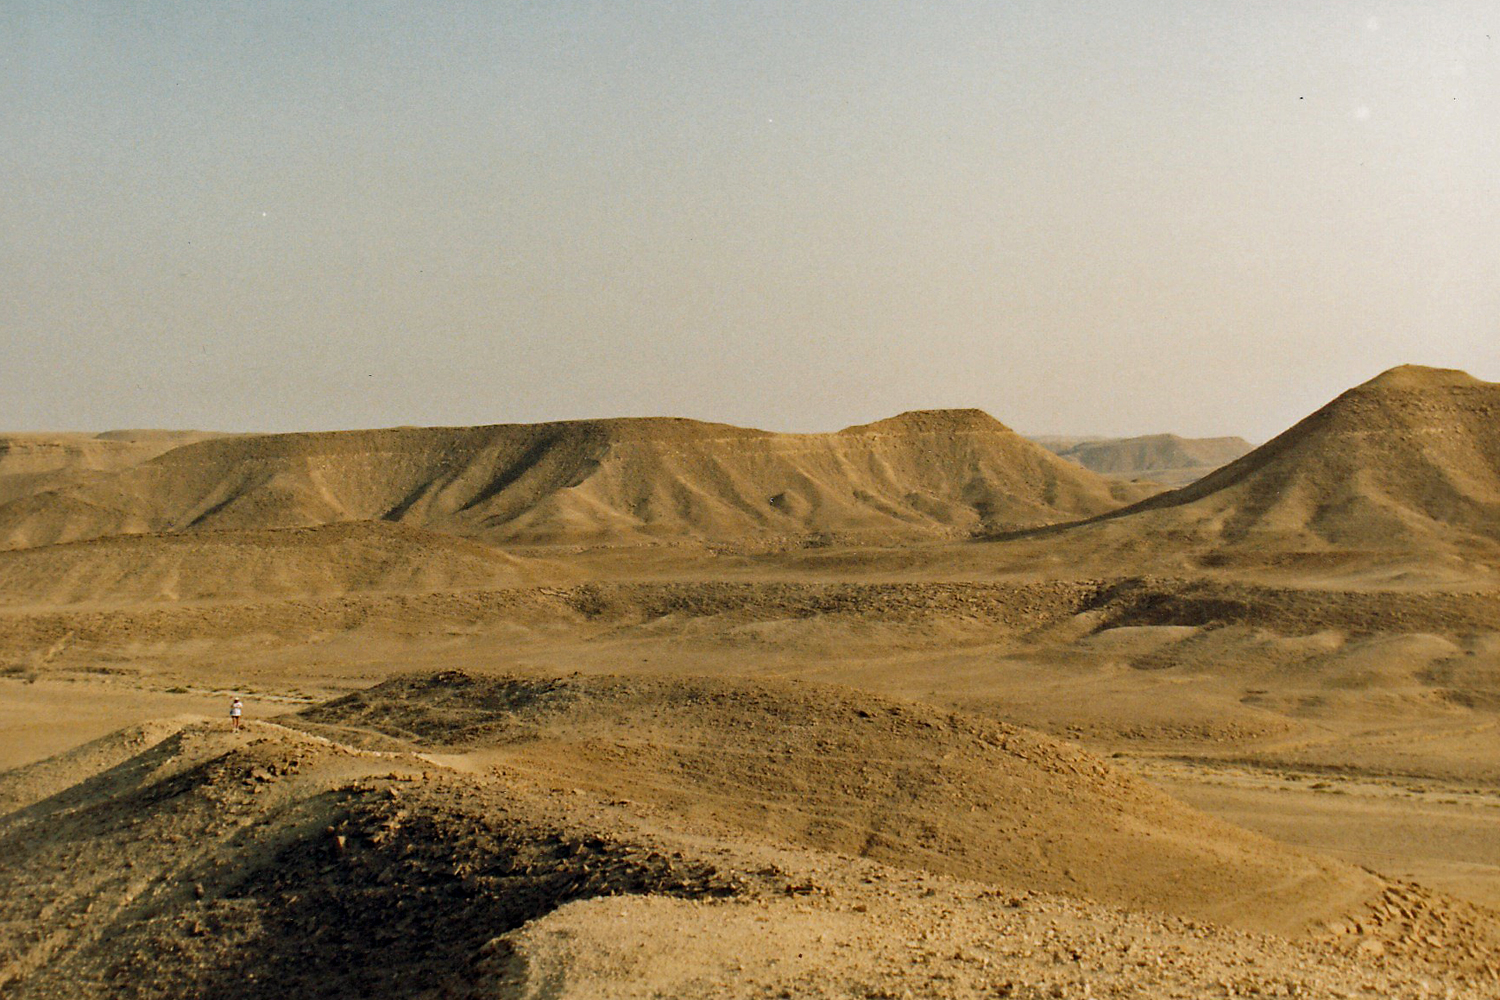 Hares laying trail in desert near Riyadh